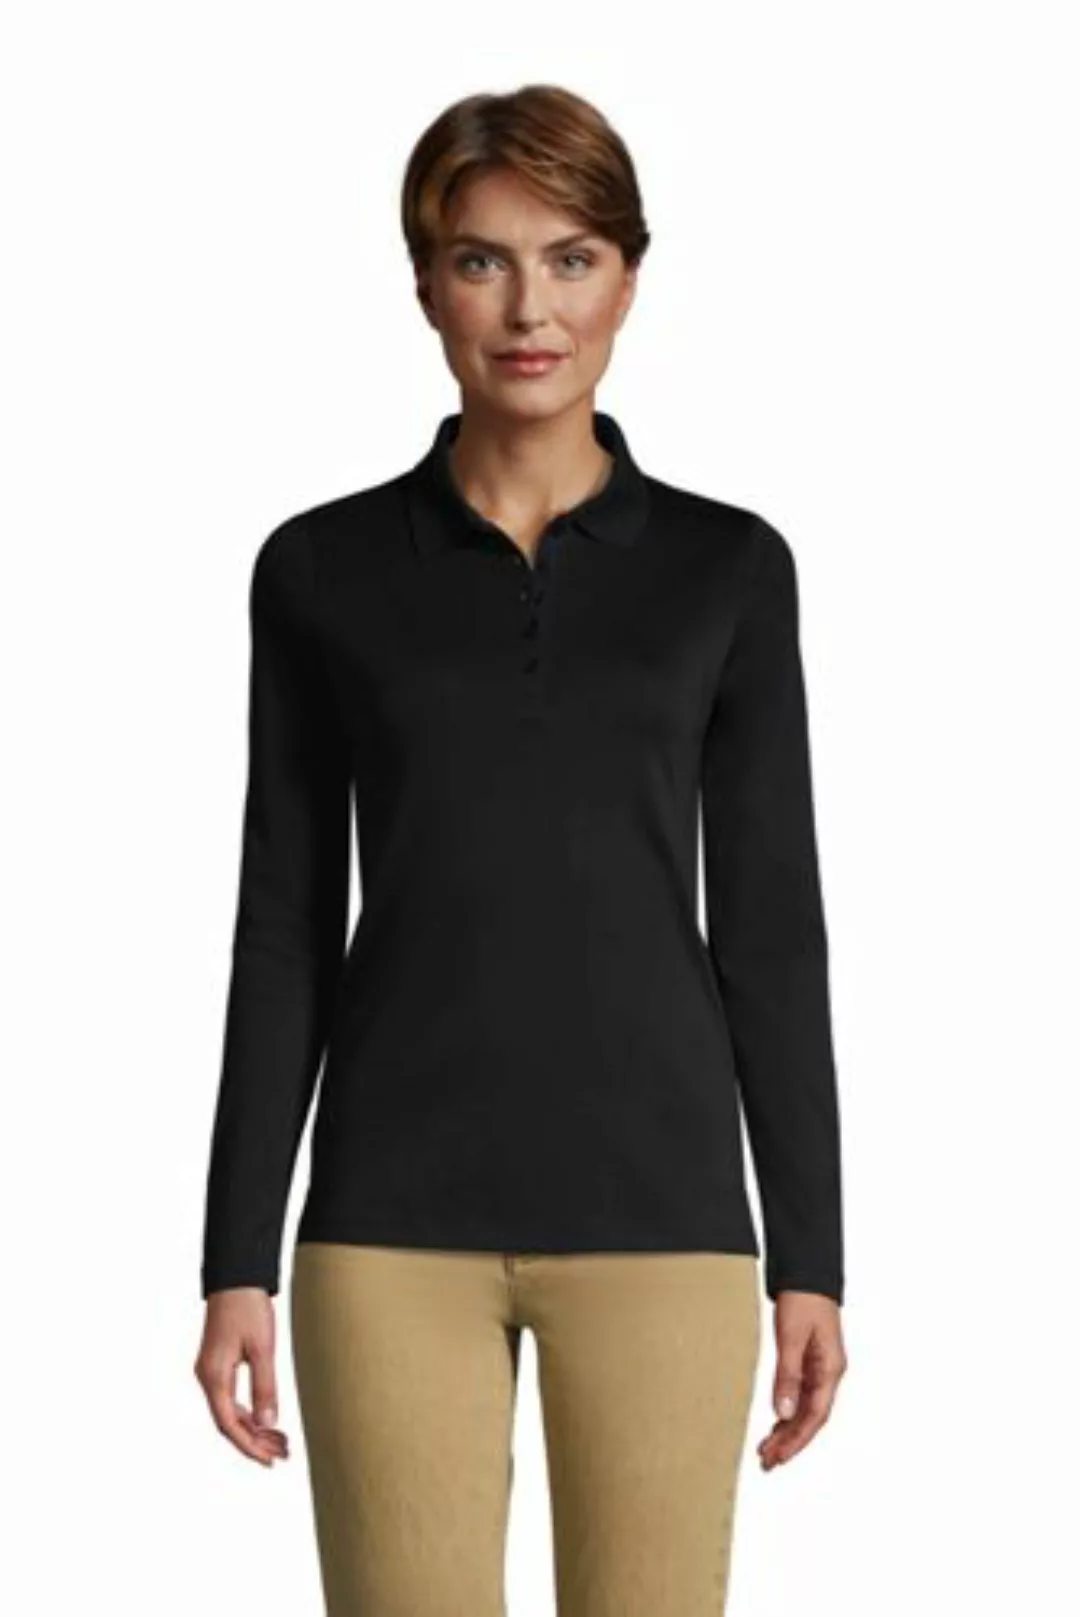 Supima-Poloshirt mit langen Ärmeln, Damen, Größe: M Normal, Schwarz, Baumwo günstig online kaufen